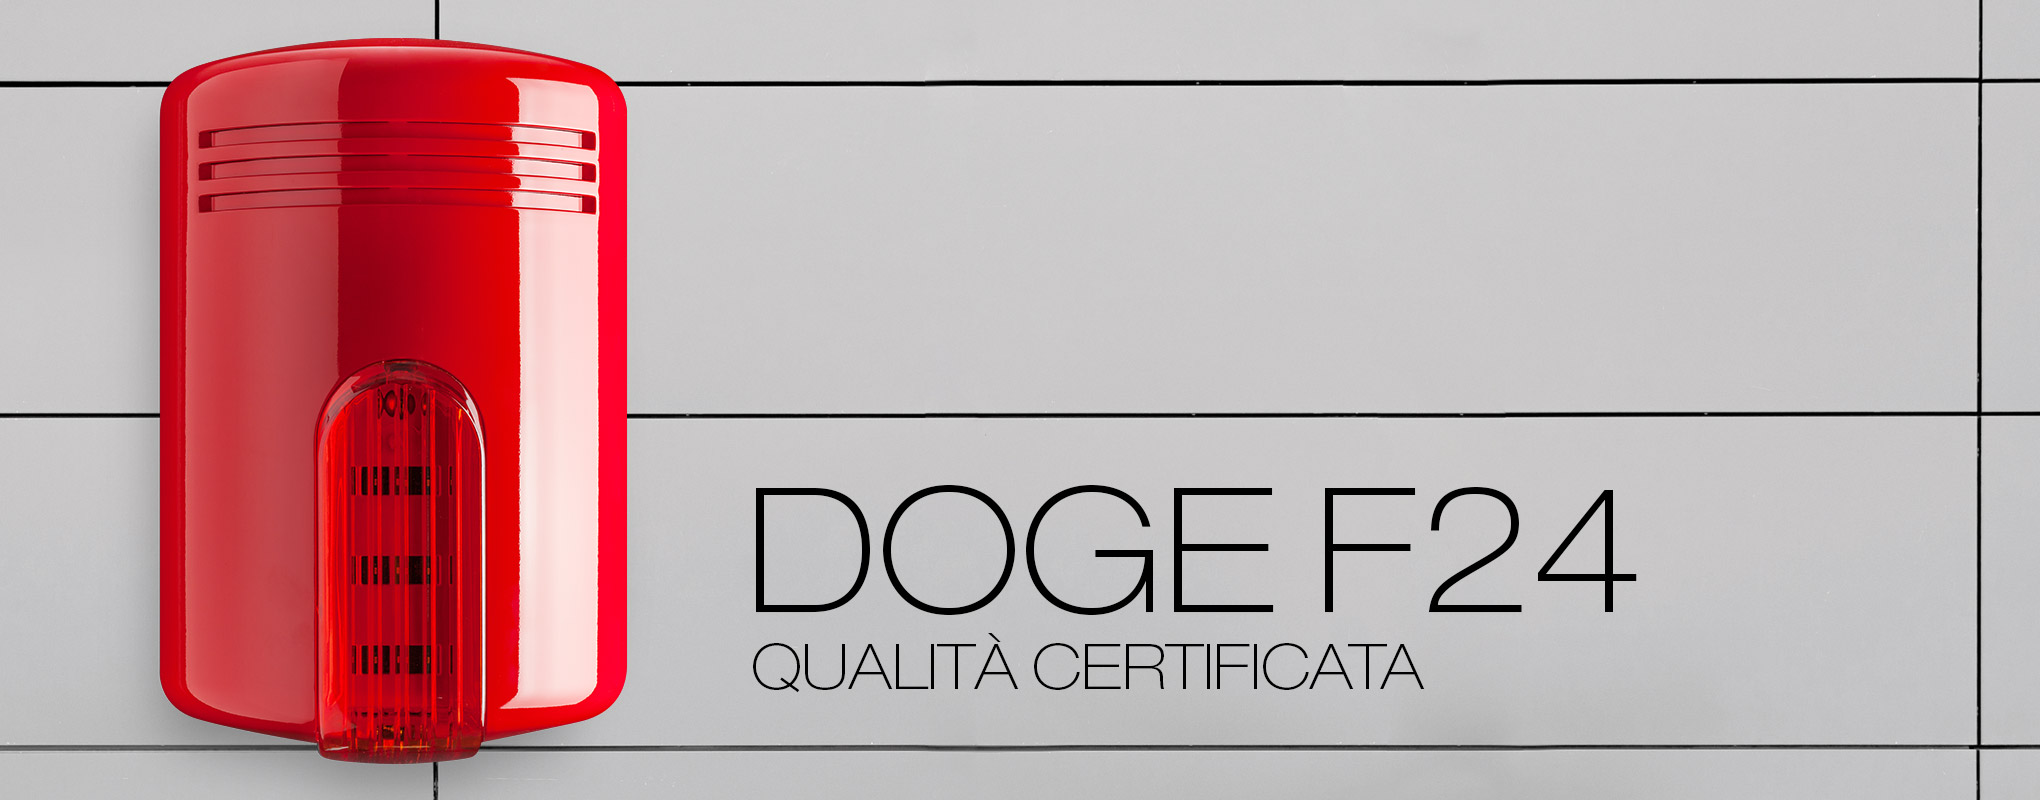 Doge F24 | Sirena antincendio con qualità certificata